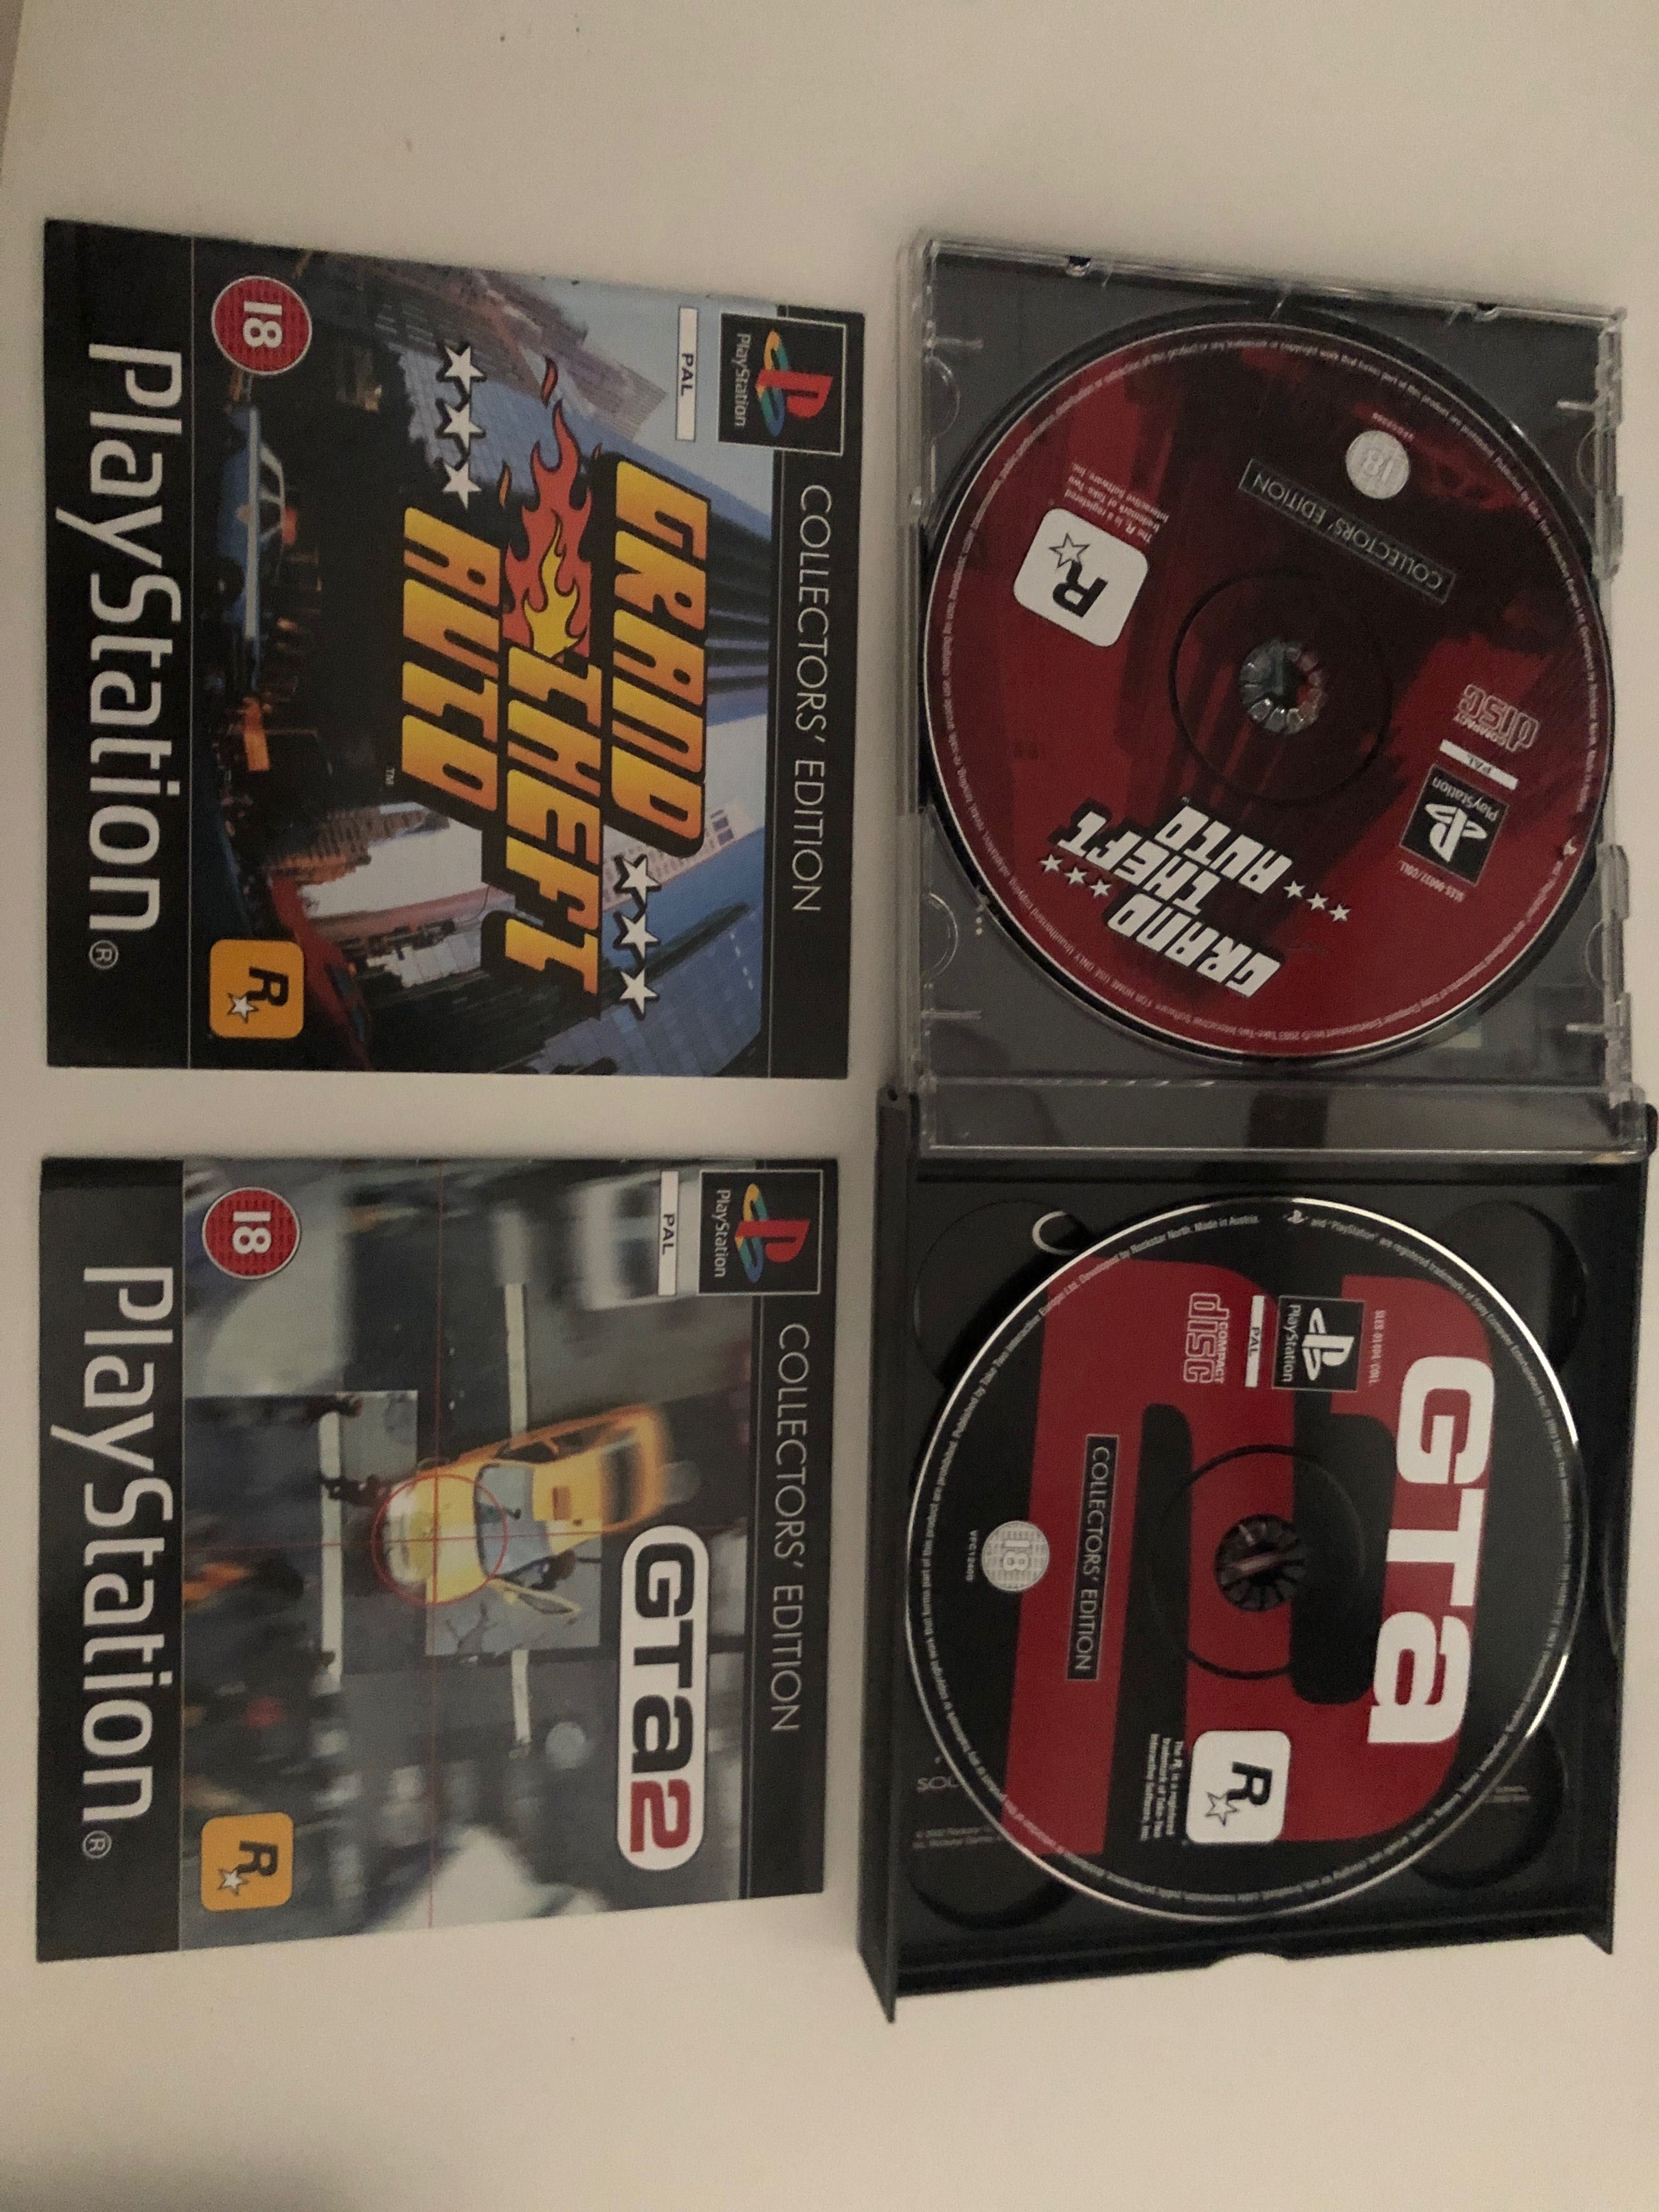 GTA Collectors’ Edition 3 Jogos